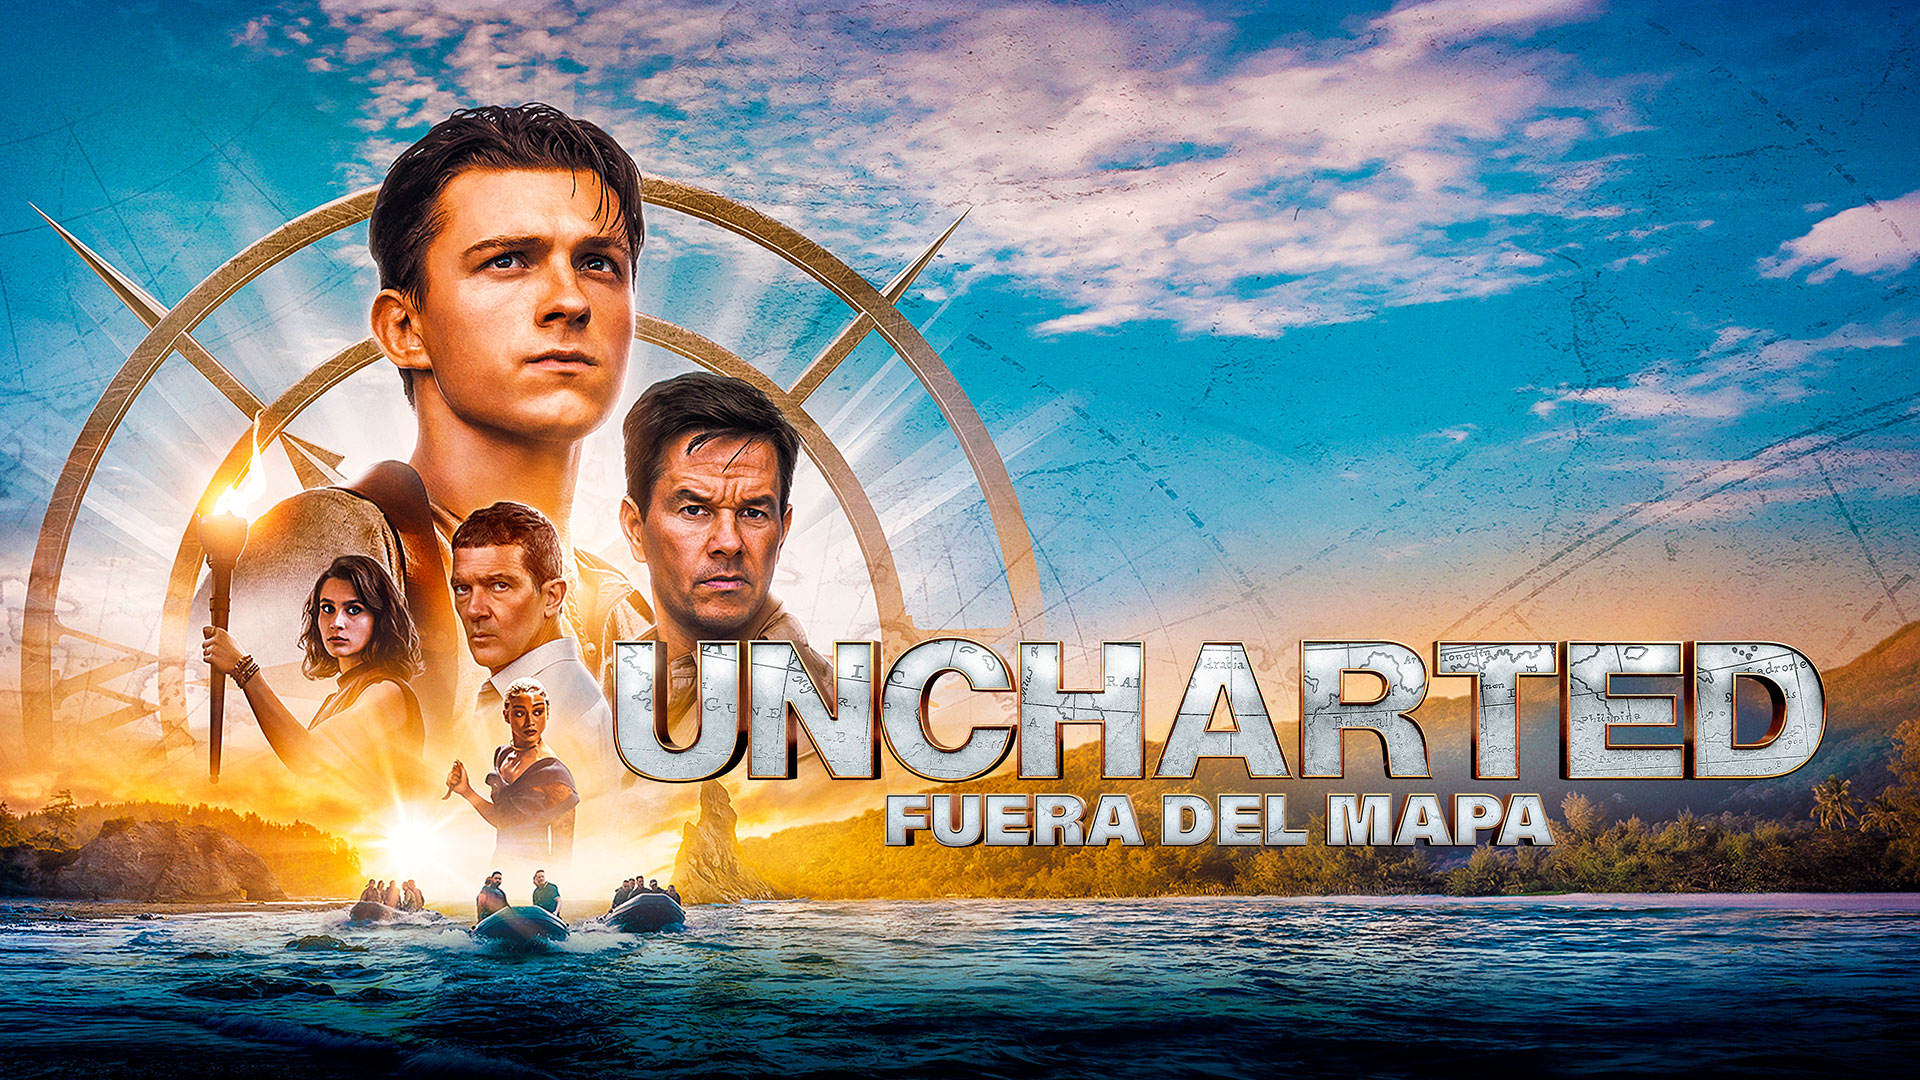 “Uncharted: fuera del mapa”, la adaptación de la gran franquicia de videojuegos llega a HBO Max